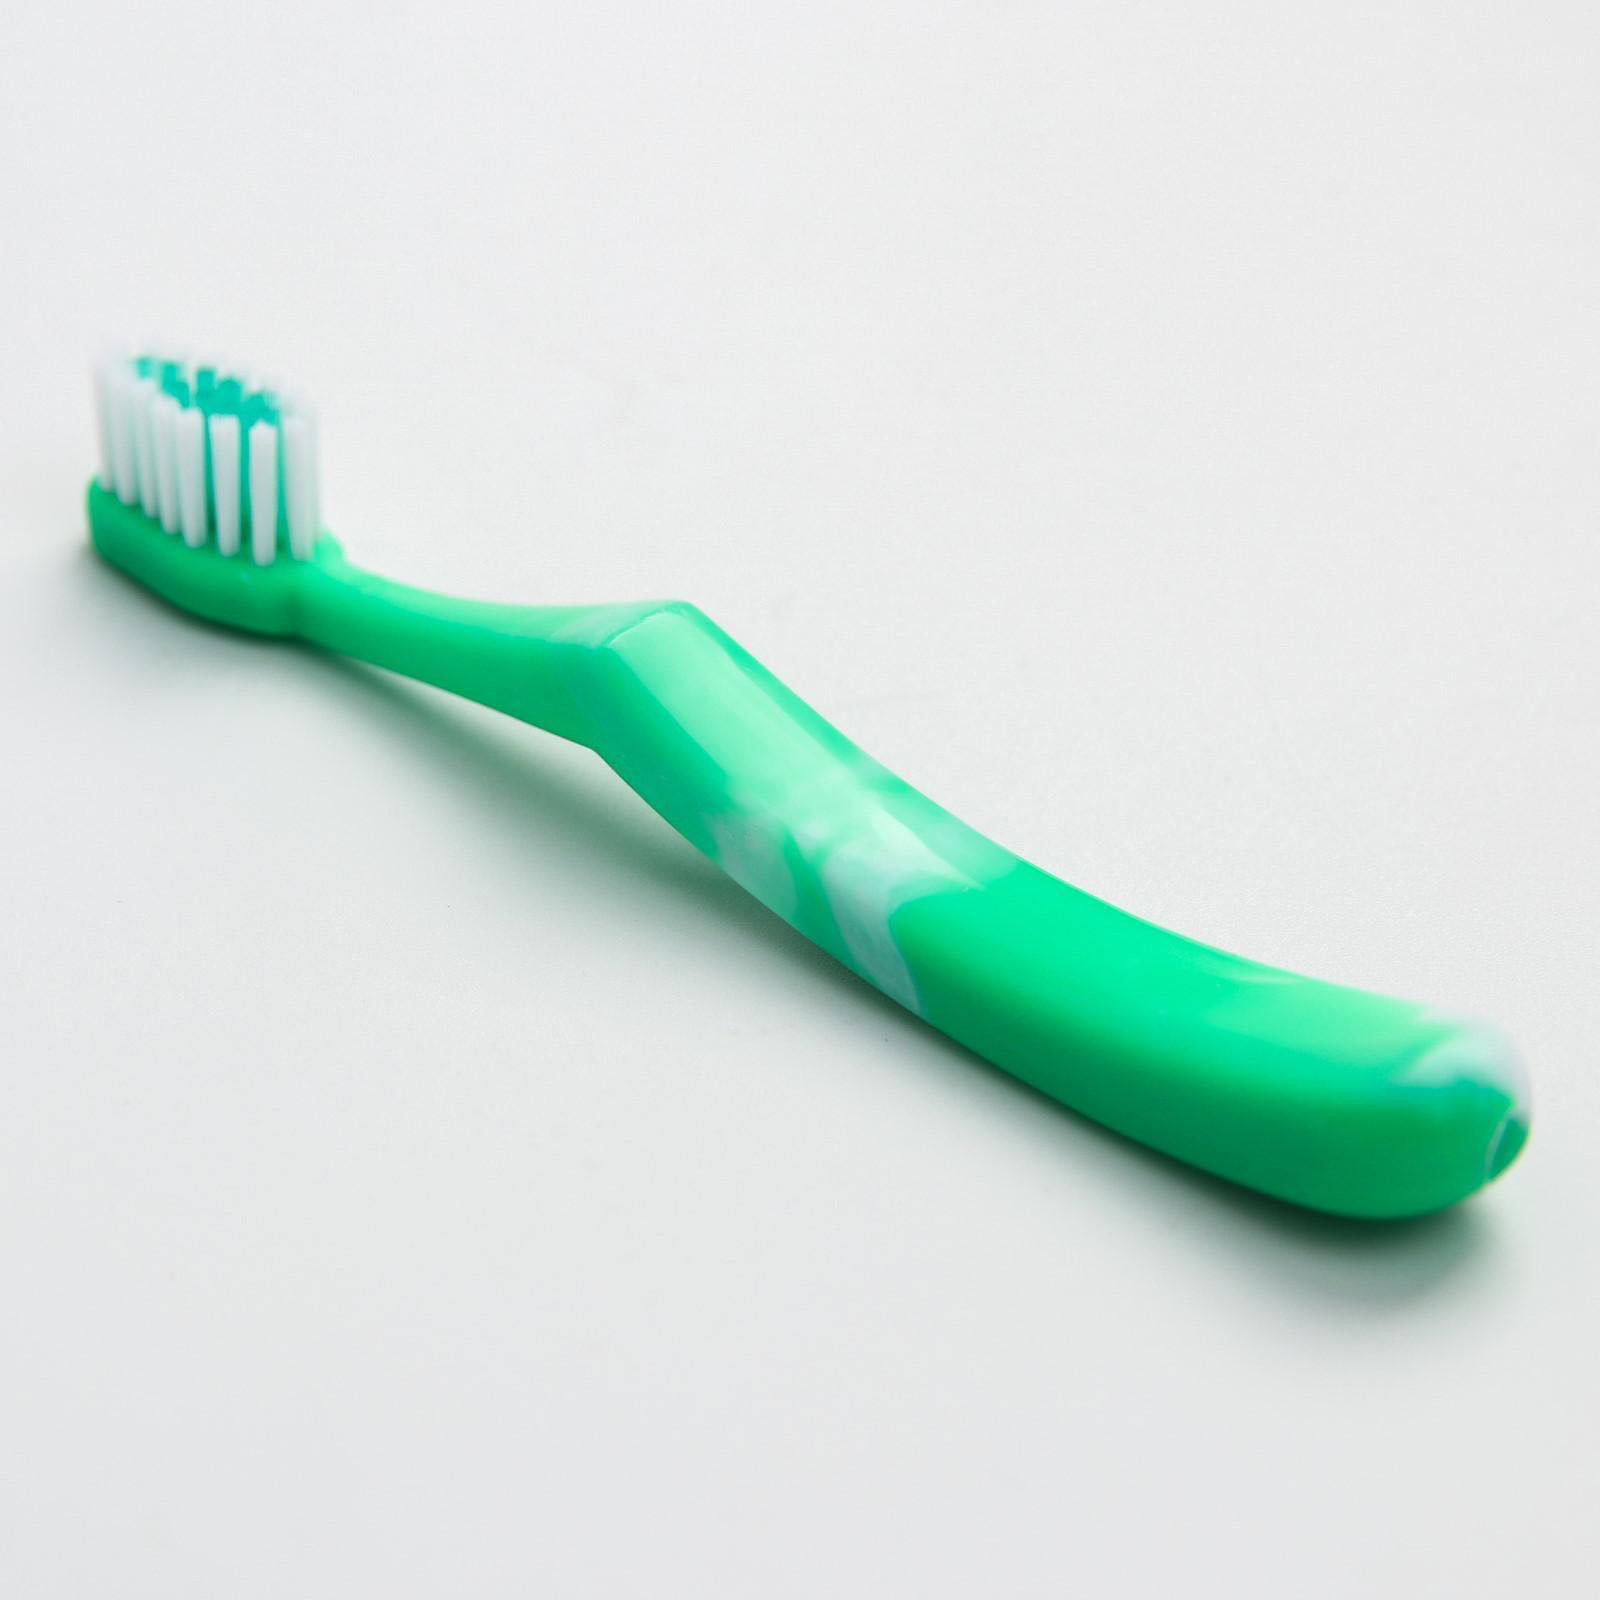 Купить зубную щетку для ребенка. Детская зубная щетка. Зубная щетка детская зеленый. Зубная щетка для детей полукруглая. Игрушечных зубных щетках.